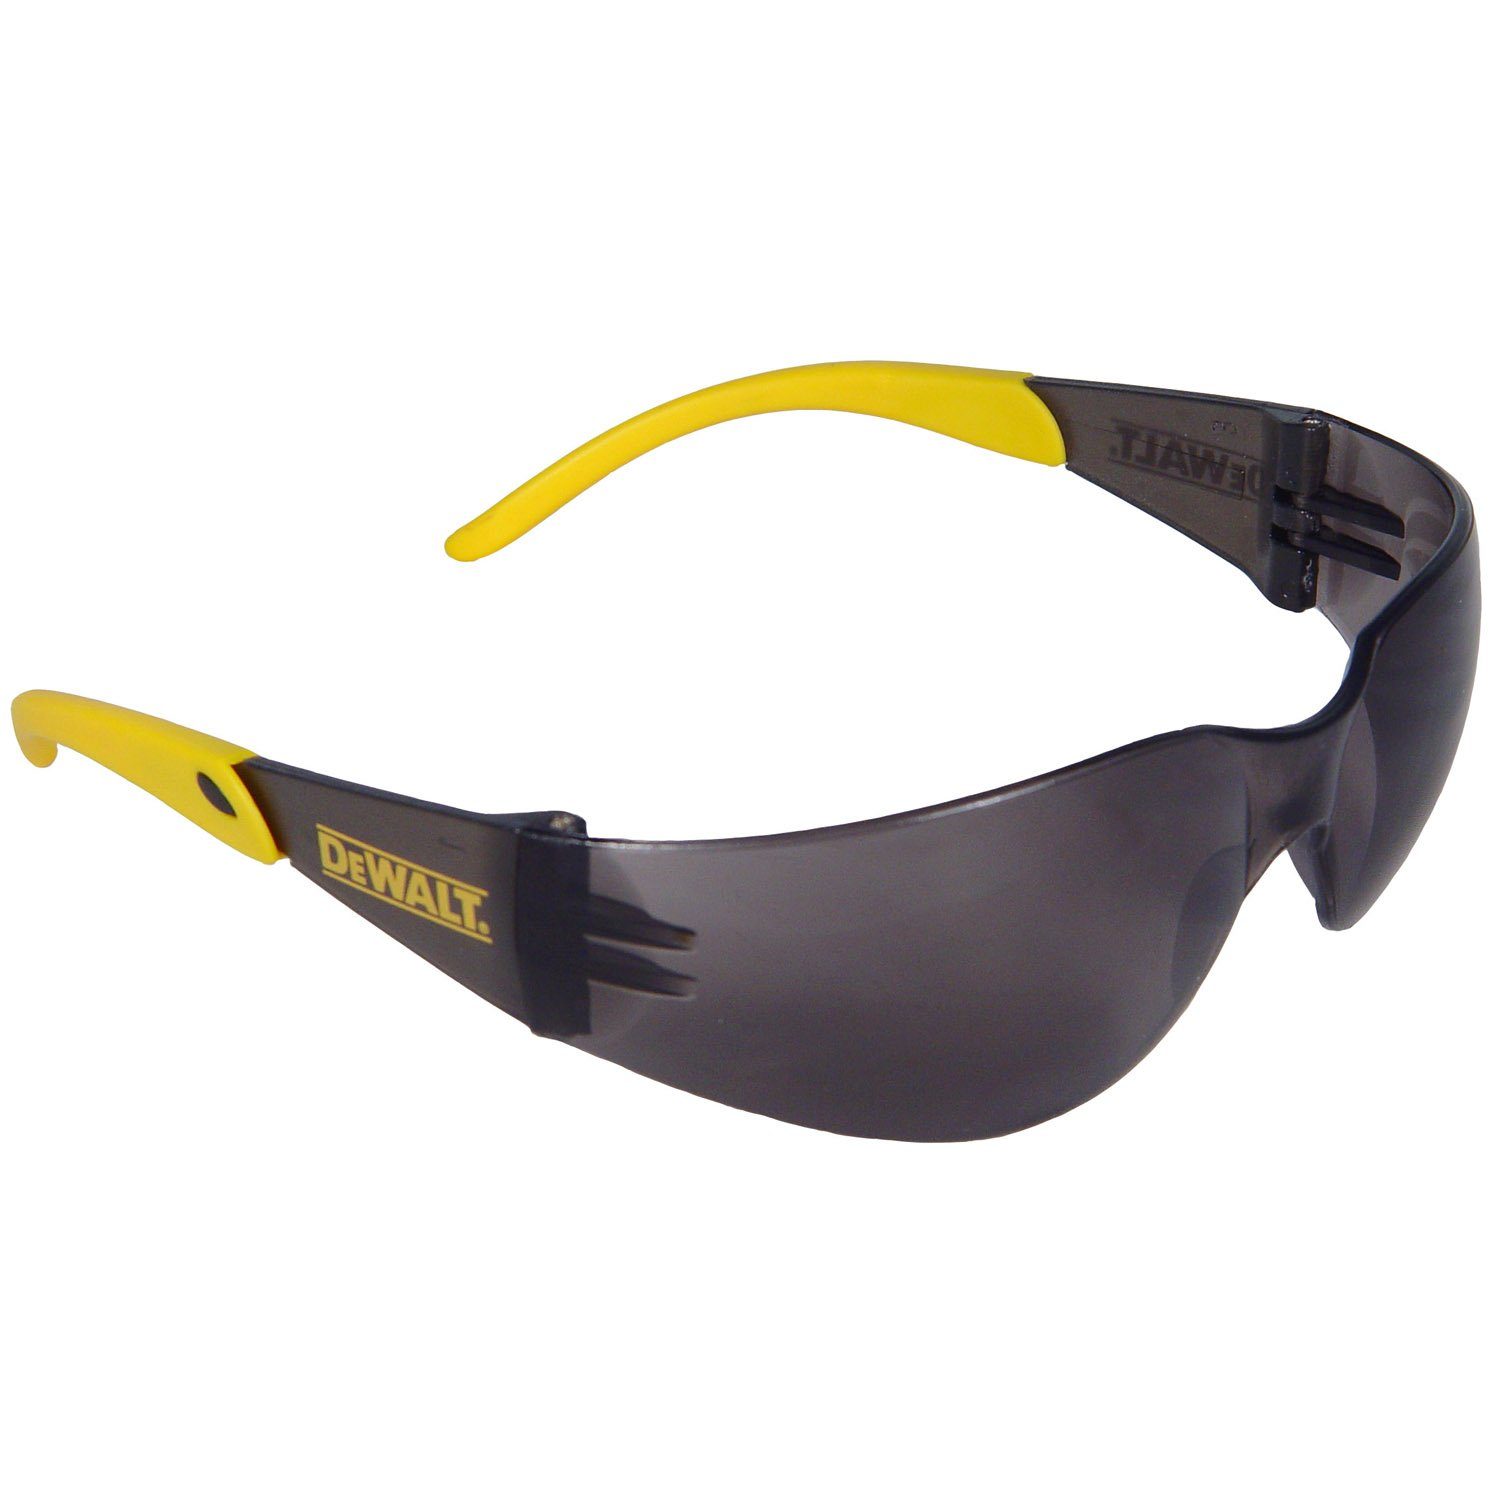 DeWalt Arbeitsschutzbrille DPG54-2DEU Protector™ Sicherheitsglas graue Tönung DIN EN 166, Polycarbonat-Glas, UVA- & UVB-Schutz, CE 5-3.1 R1F